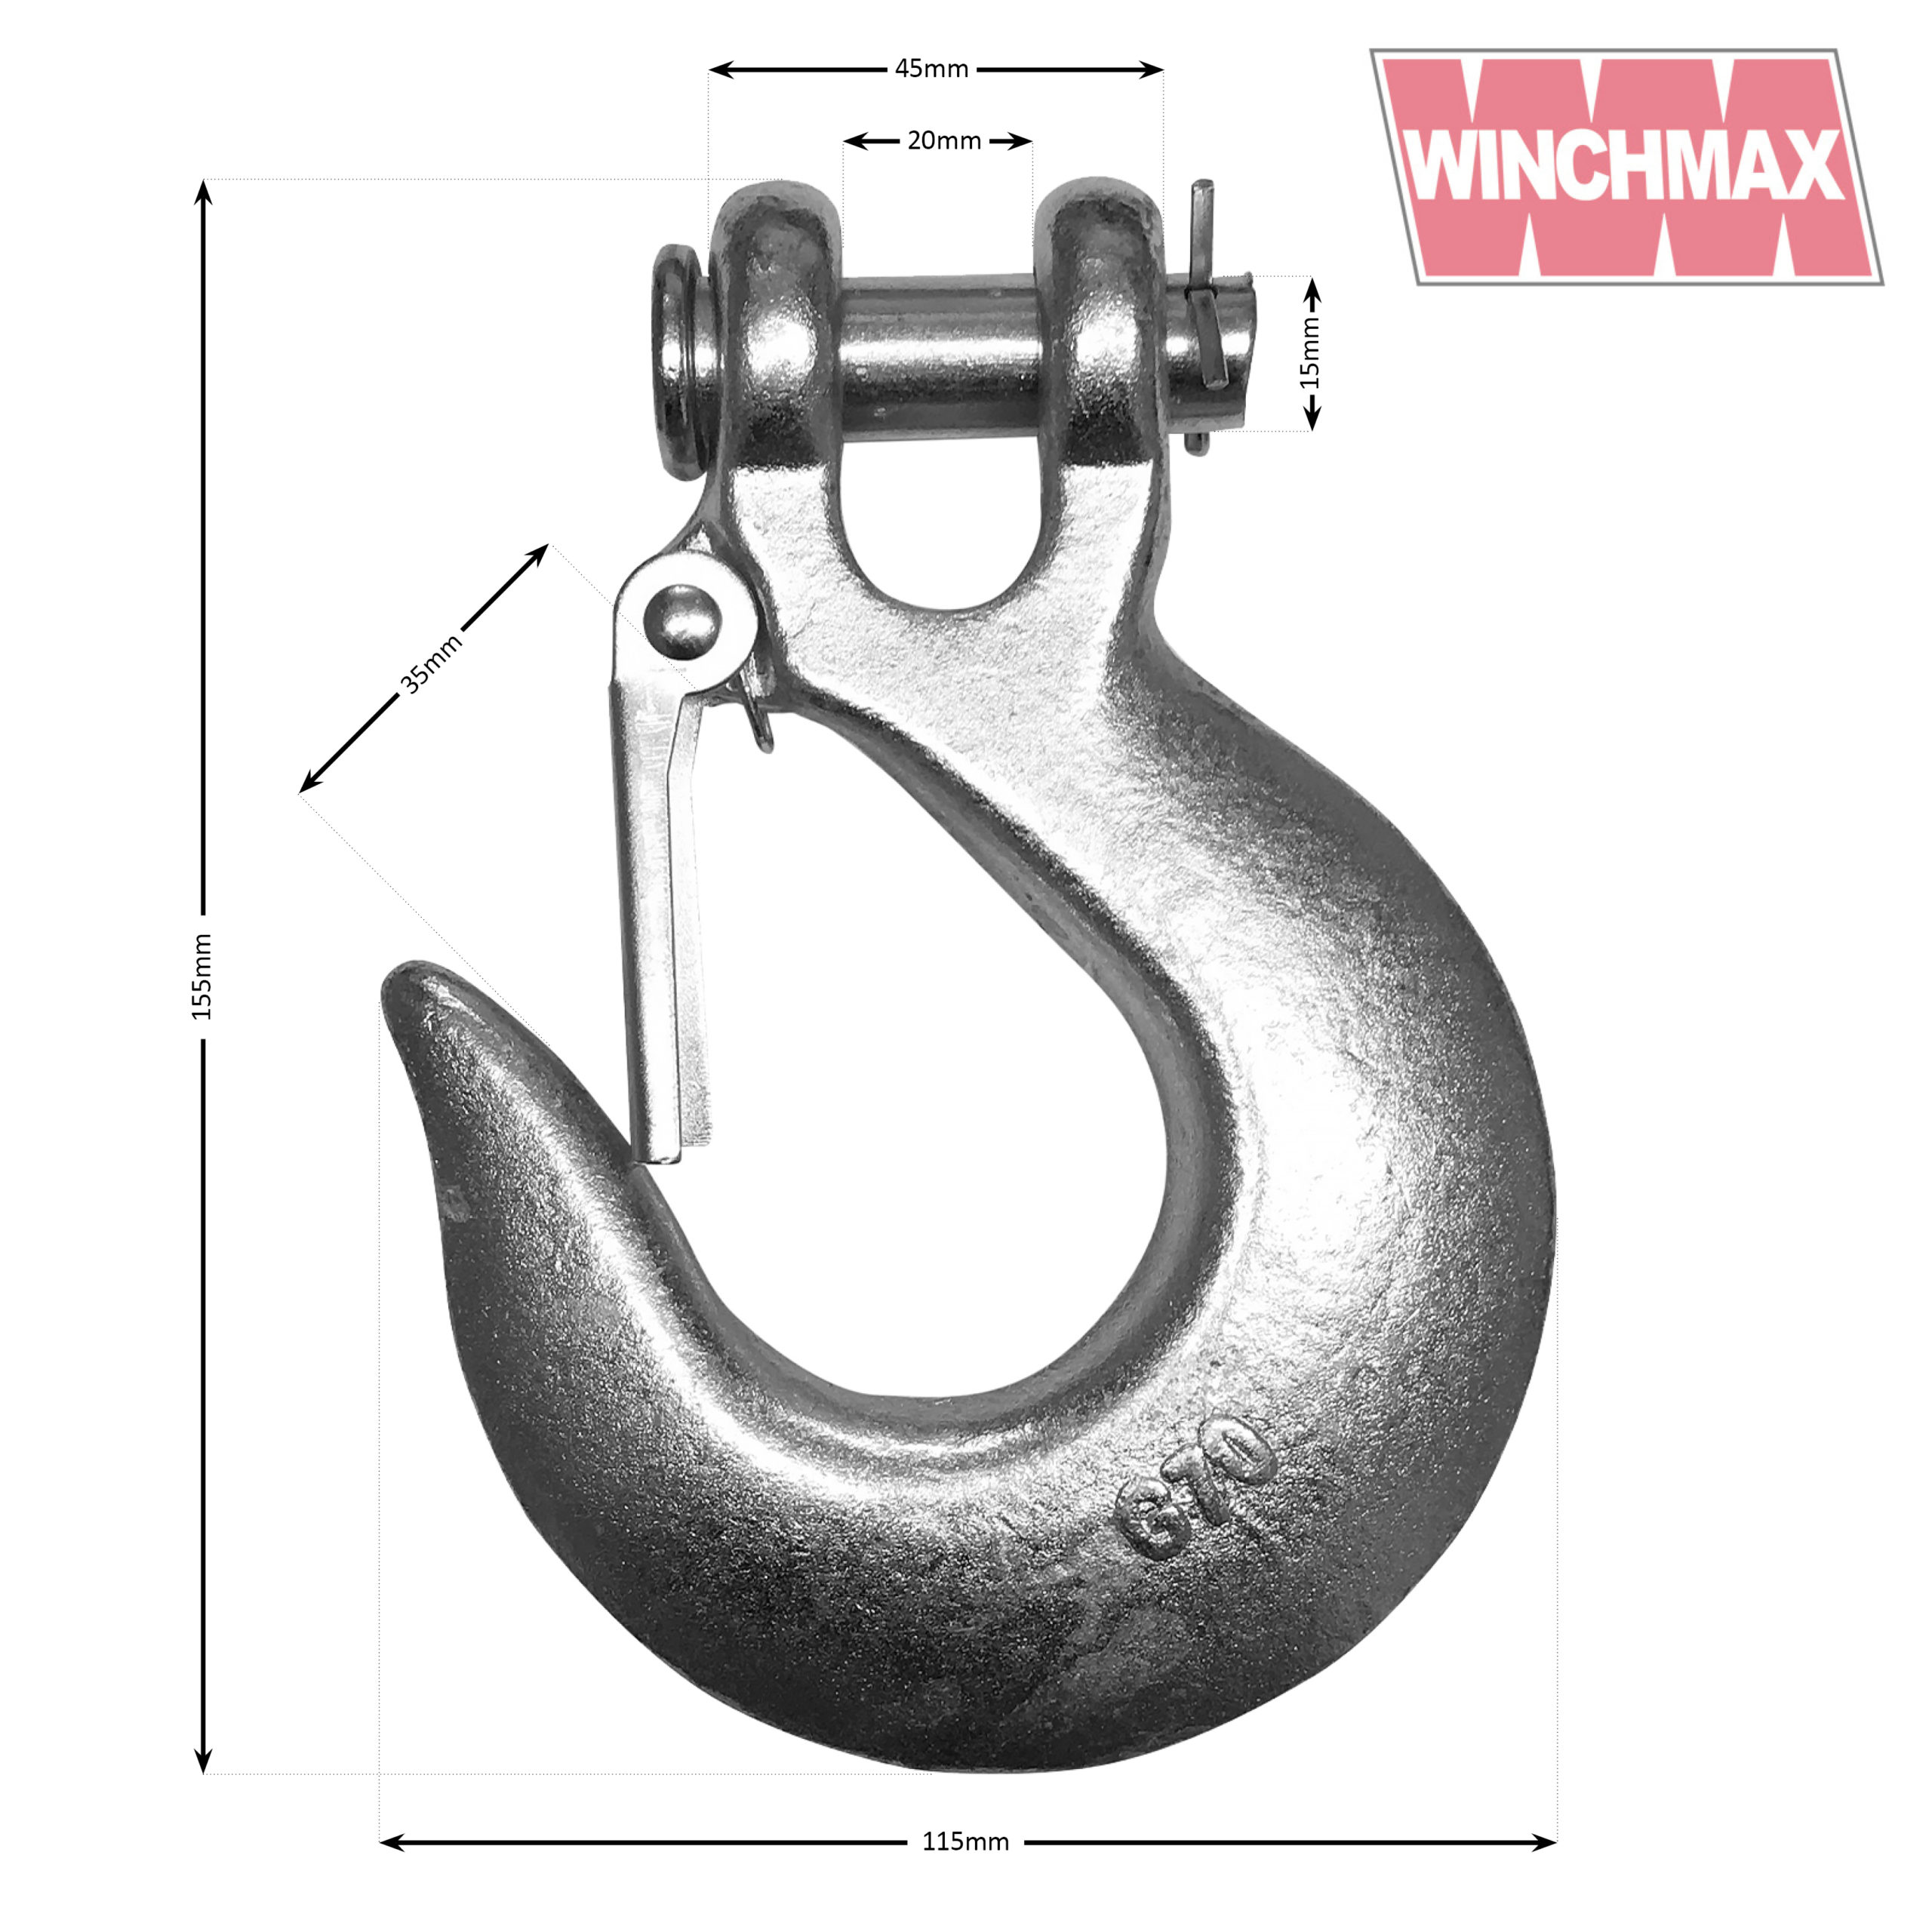 WINCHMAX. 20 Liter Edelstahltank. Kraftstoff, Benzin, Diesel, Wasser.  Standardmodell. : : Automotive